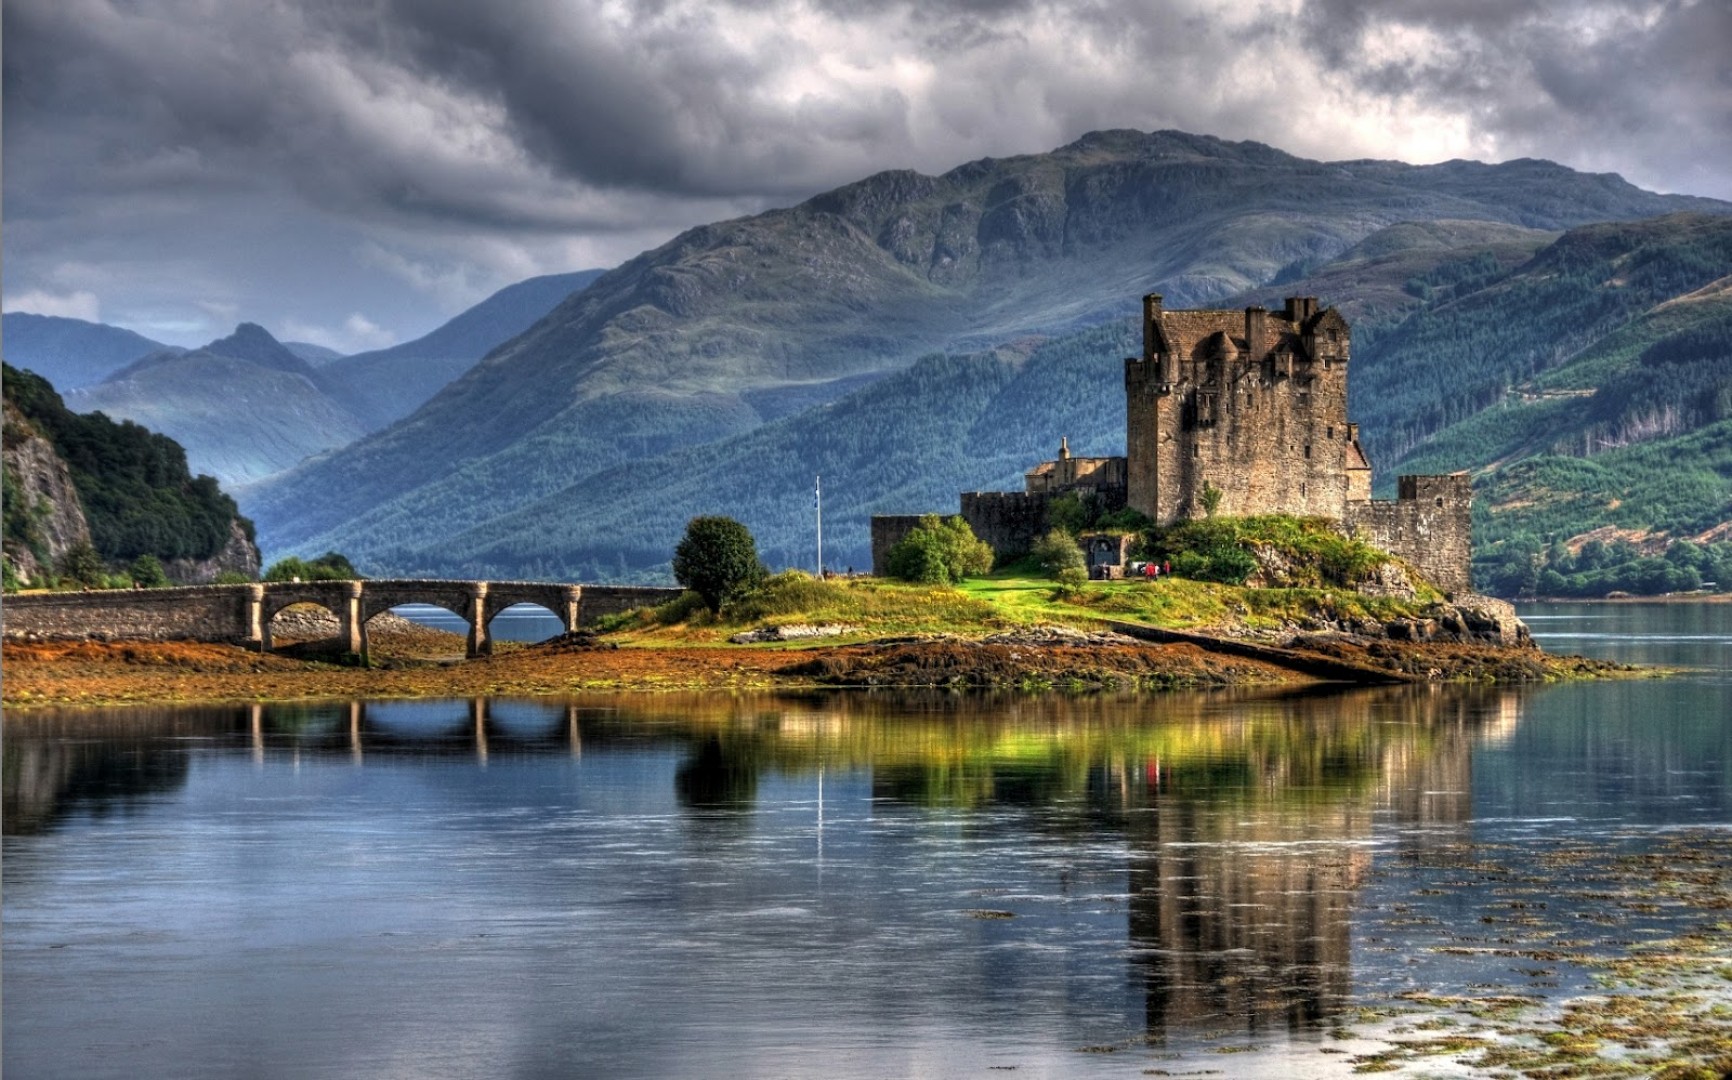 Scotland is beautiful. Эйлен Донан Шотландия. Замок Эйлен-Донан, Великобритания. Остров Скай замок Эйлен Донан. Кирримьюр Шотландия.